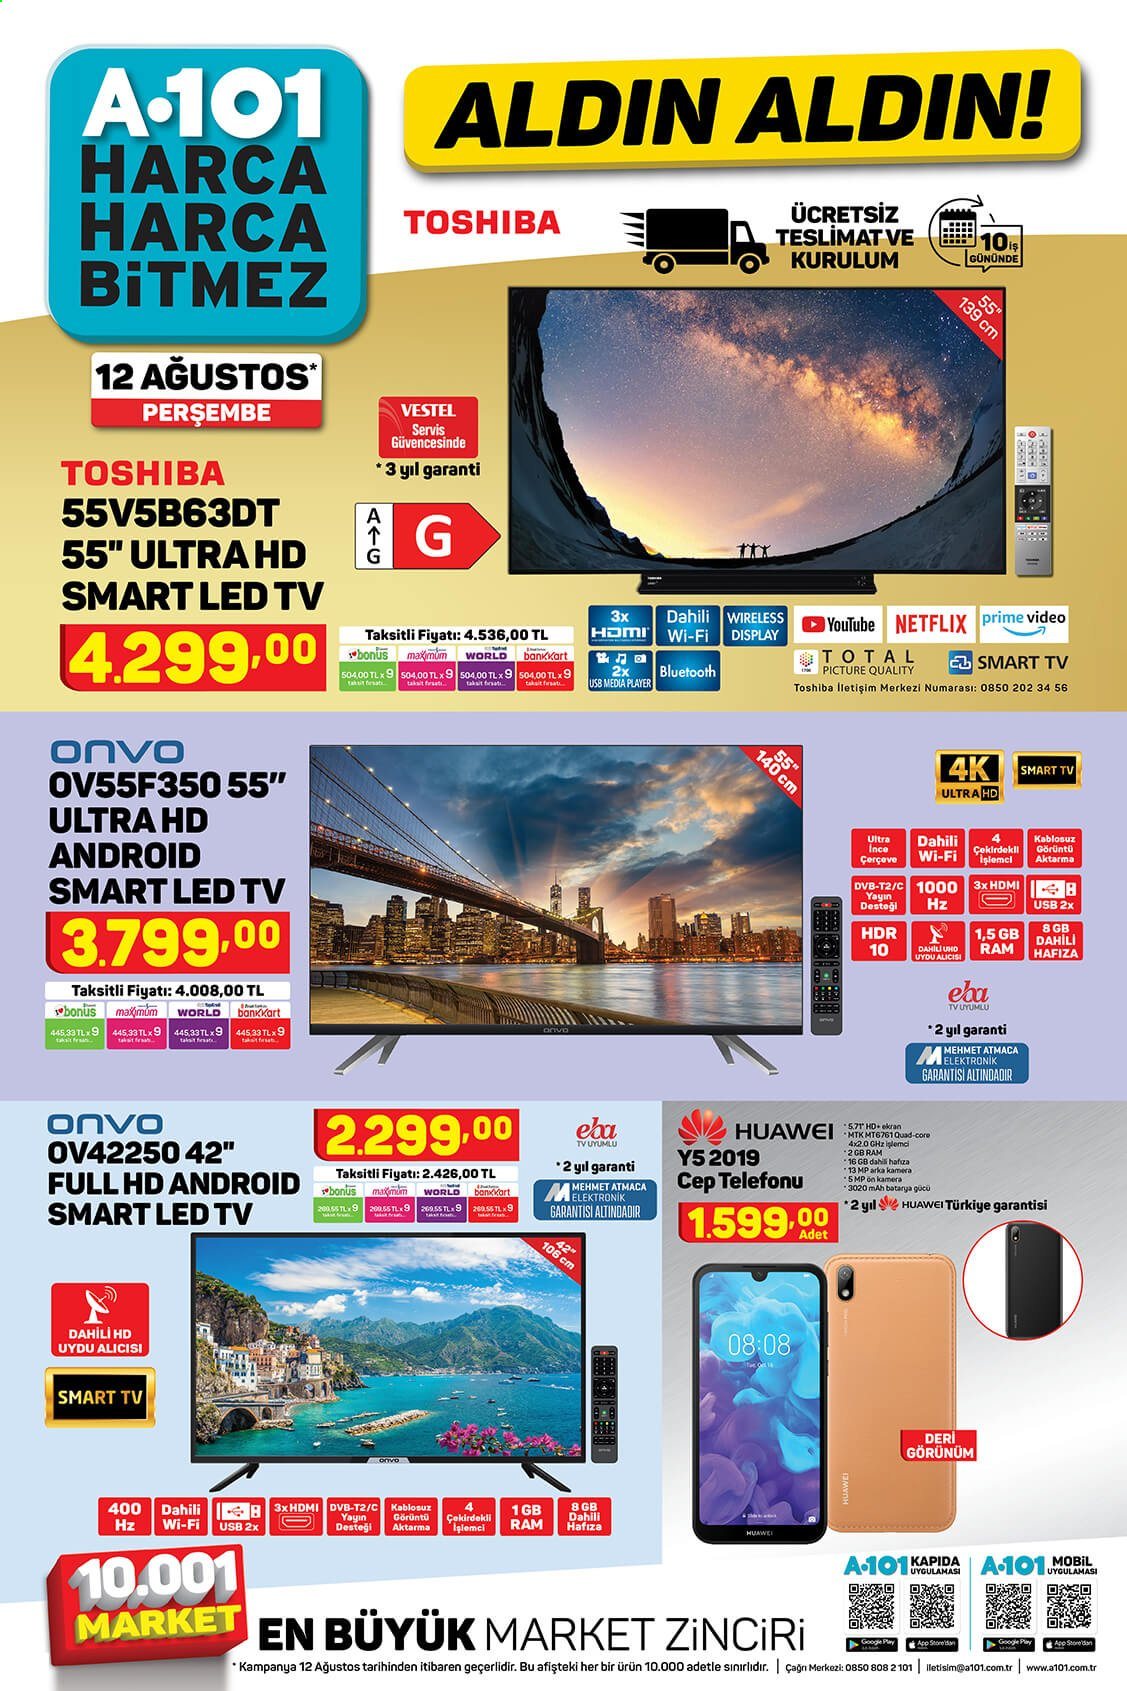 thumbnail - A101 aktüel ürünler, broşür  - 8.12.2021 - 8.25.2021 - Satıştaki ürünler - Smart TV, LED TV, televizyon, Huawei, cep telefon. Sayfa 1.